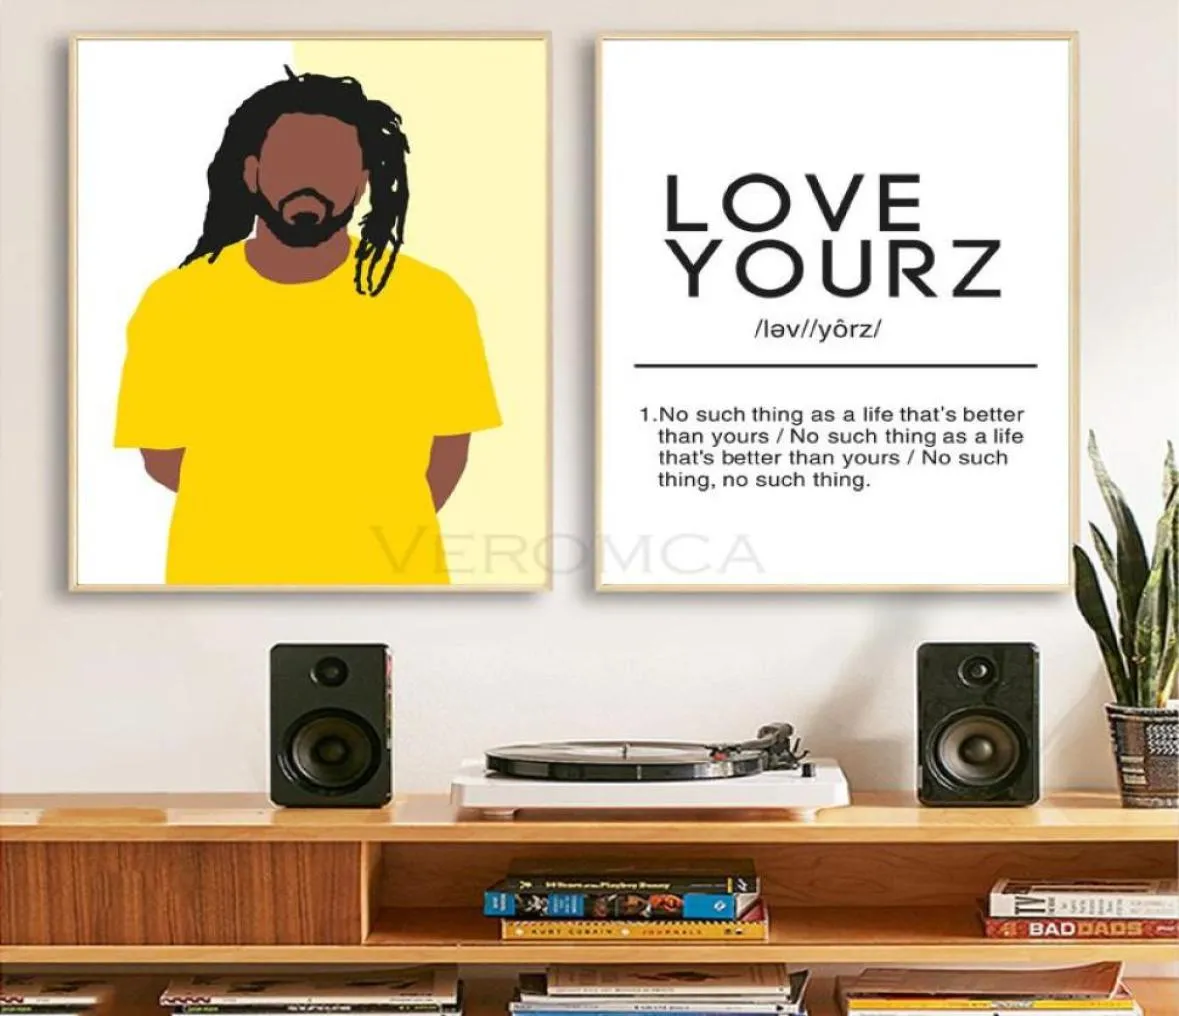 Resimler J Cole Rap Müzik Şarkıcı Poster Sanat Tuval Resim Seviyorum Tanım Hip Hop Baskıları Rapçi Duvar Resimleri Ana Sayfa Dec8470622